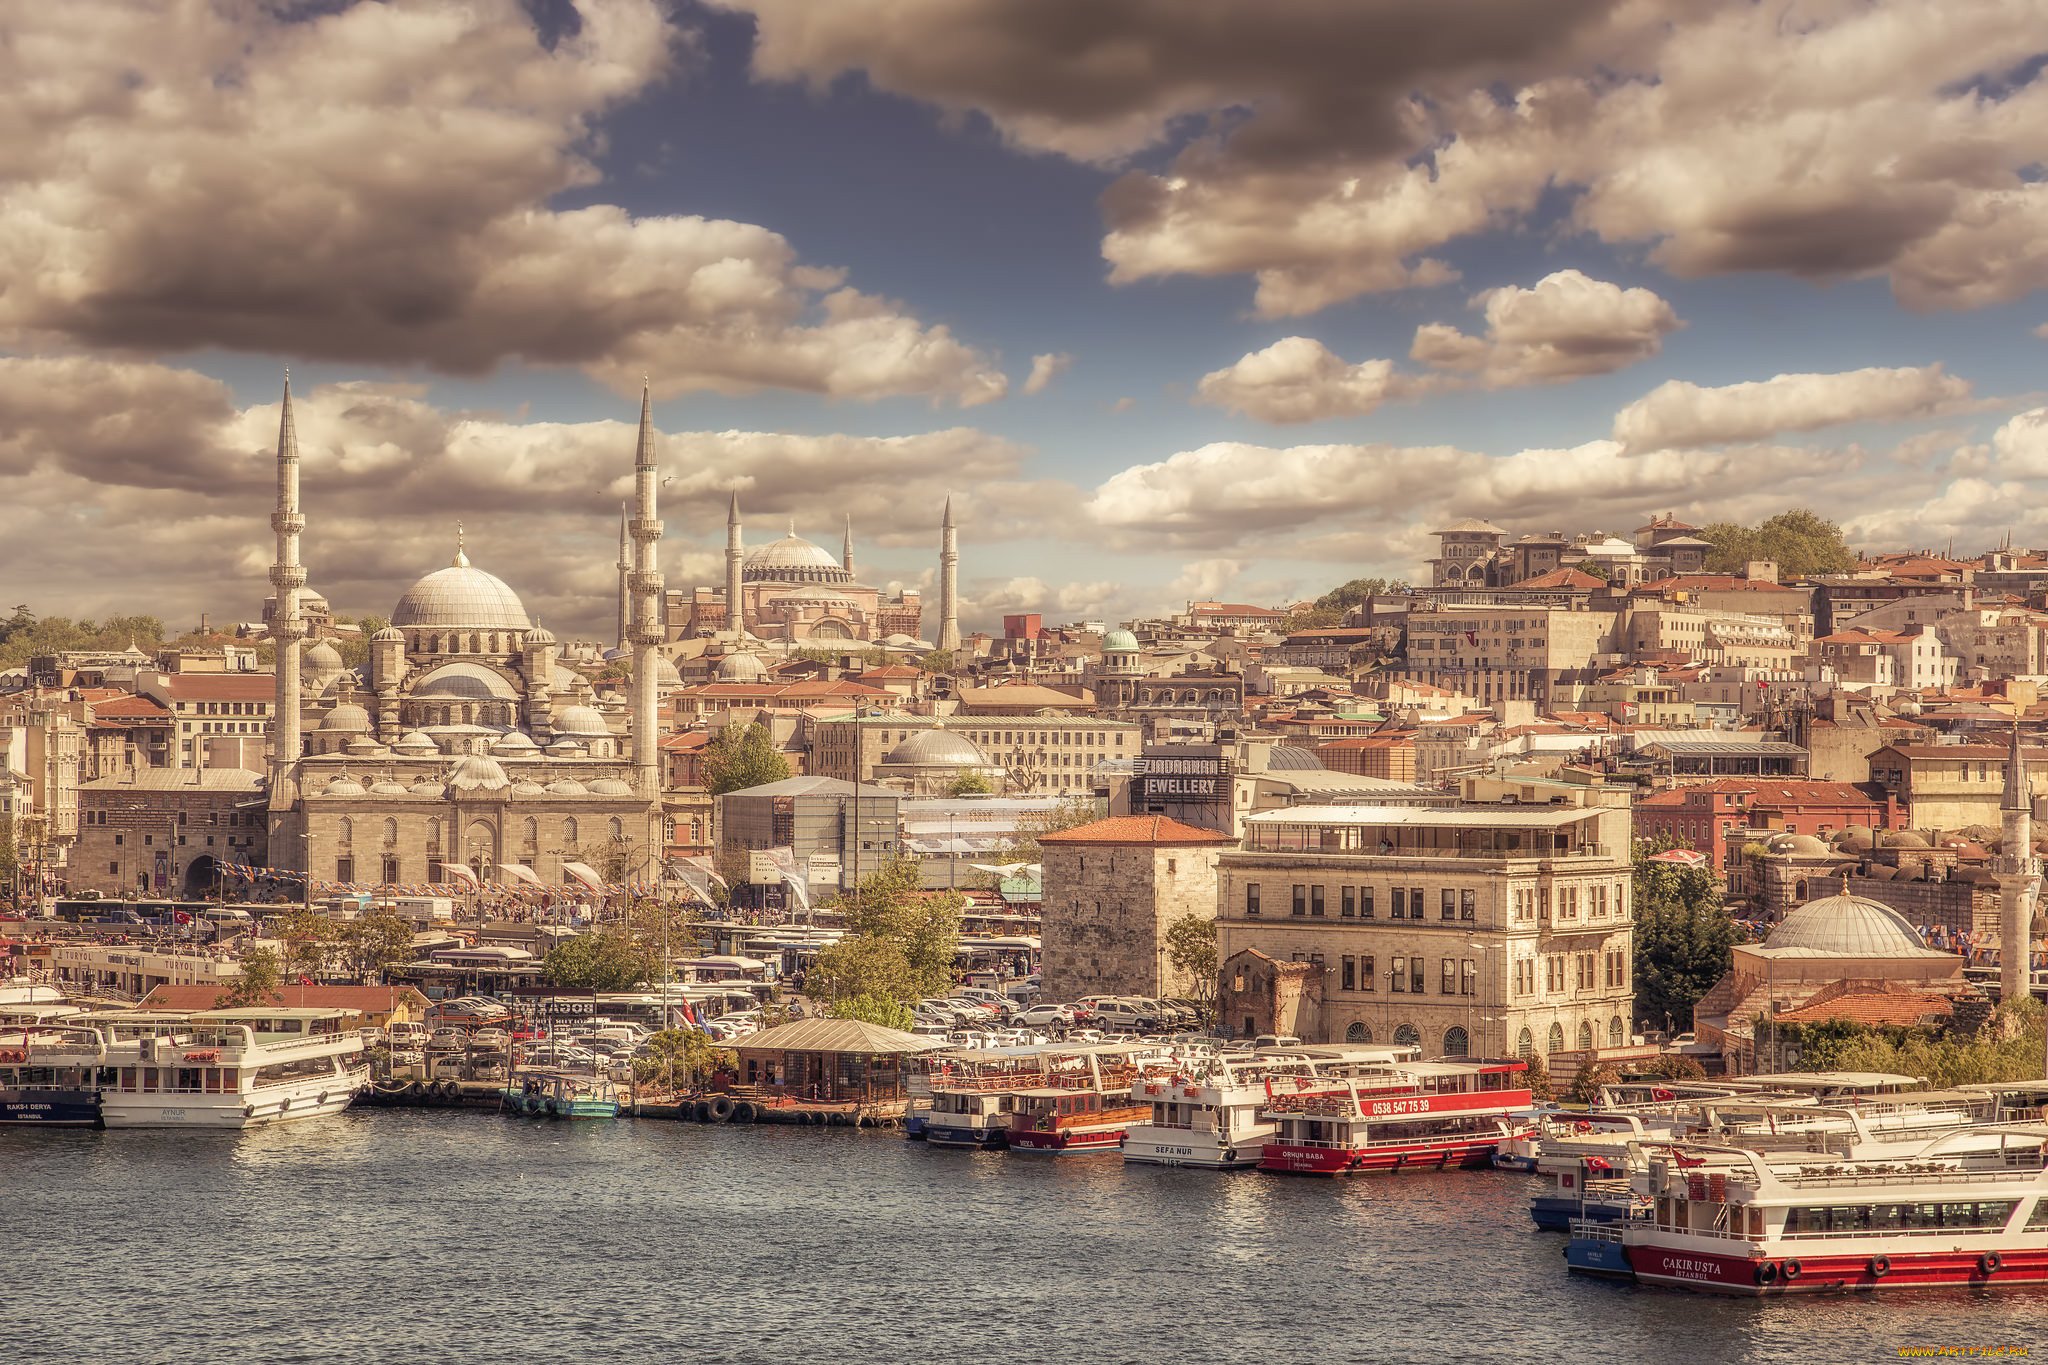 Фото Стамбула в хорошем качестве